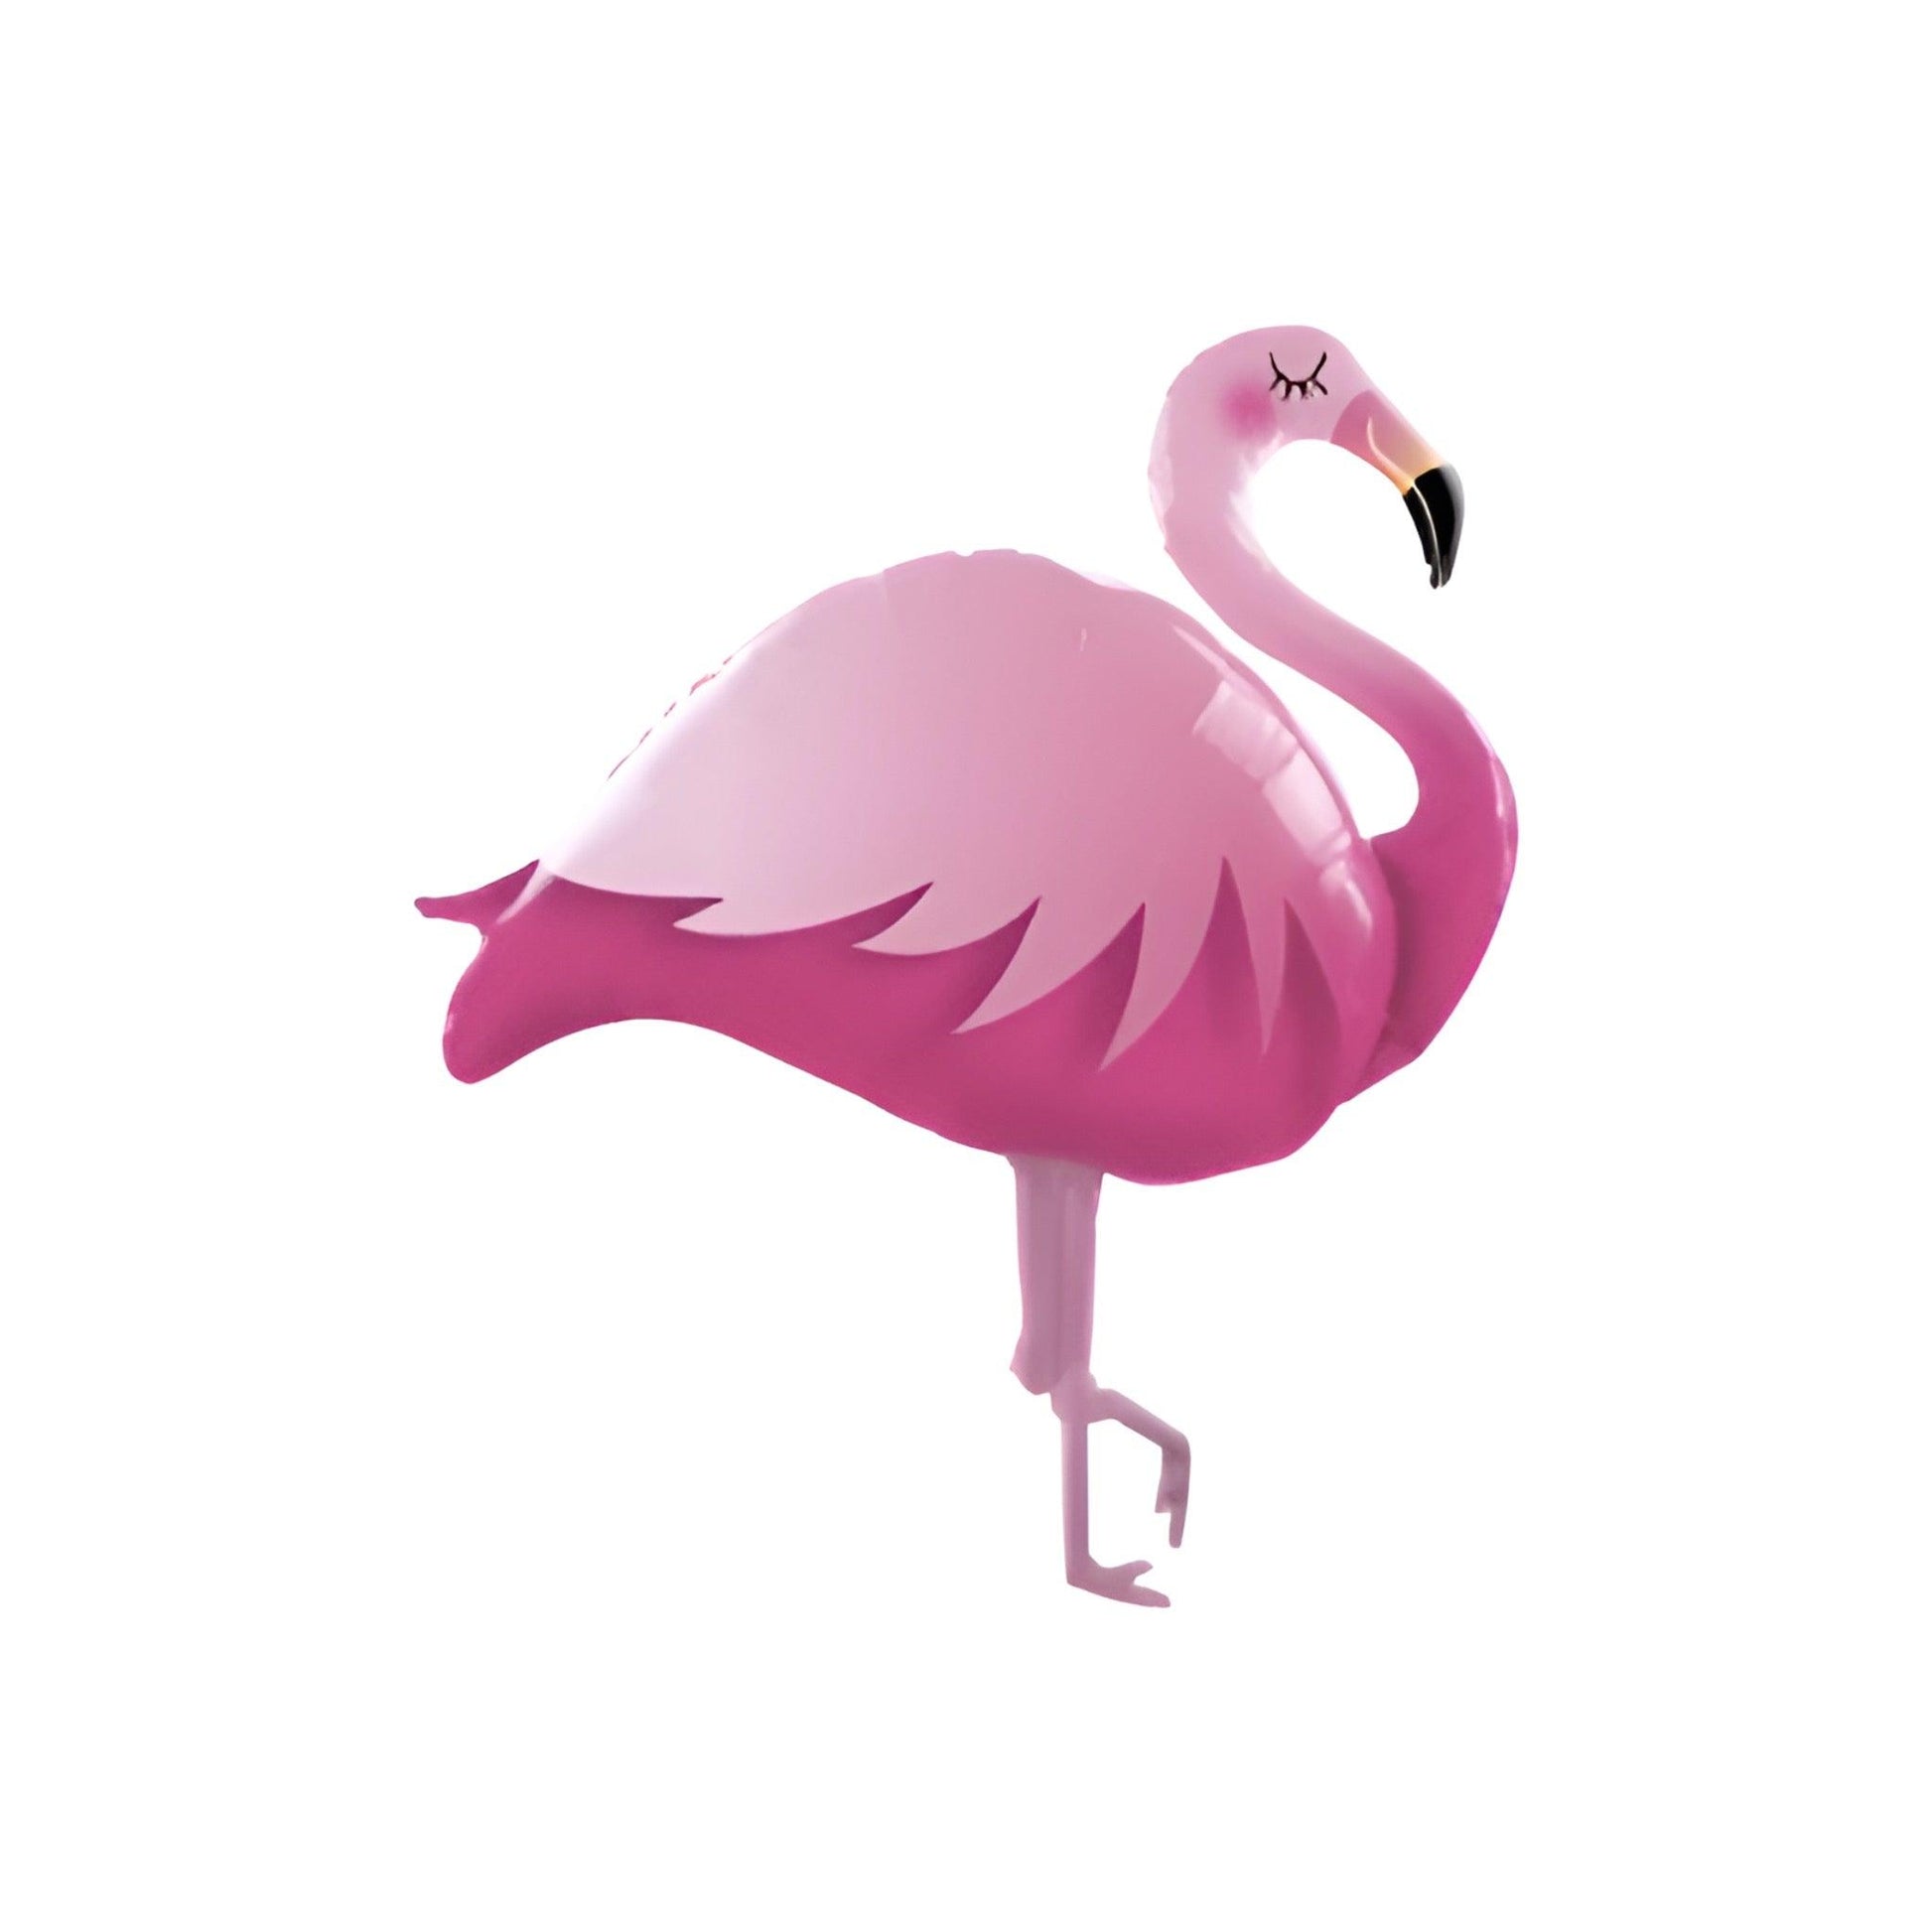 Jumbo pink Flamingo balloon with black beak.